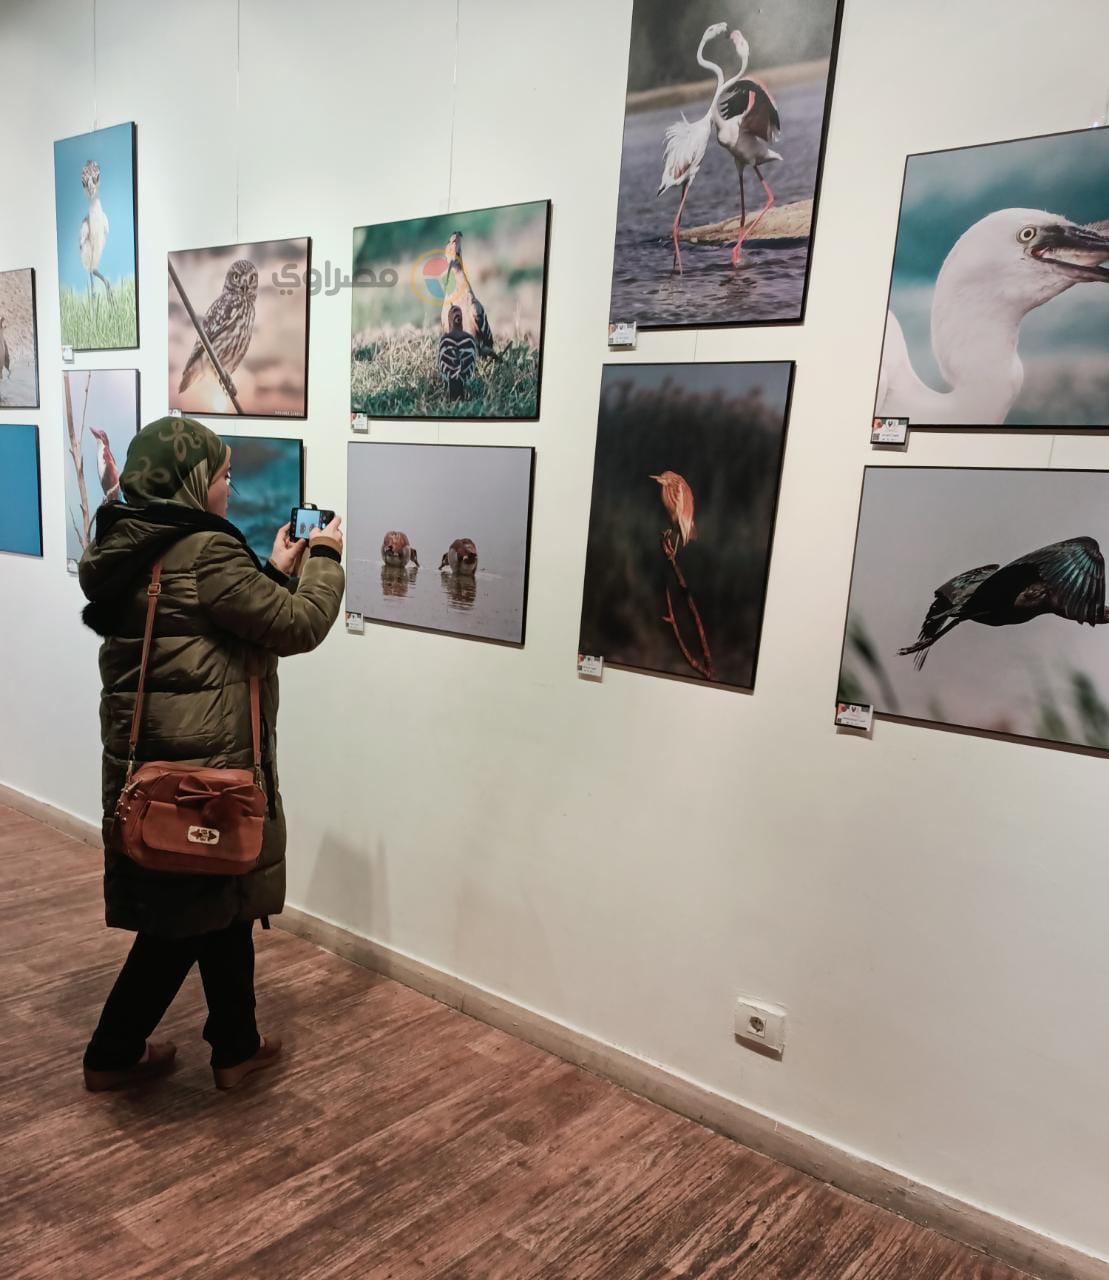 زوار معرض فوتوغرافيا للطيور المهاجرة